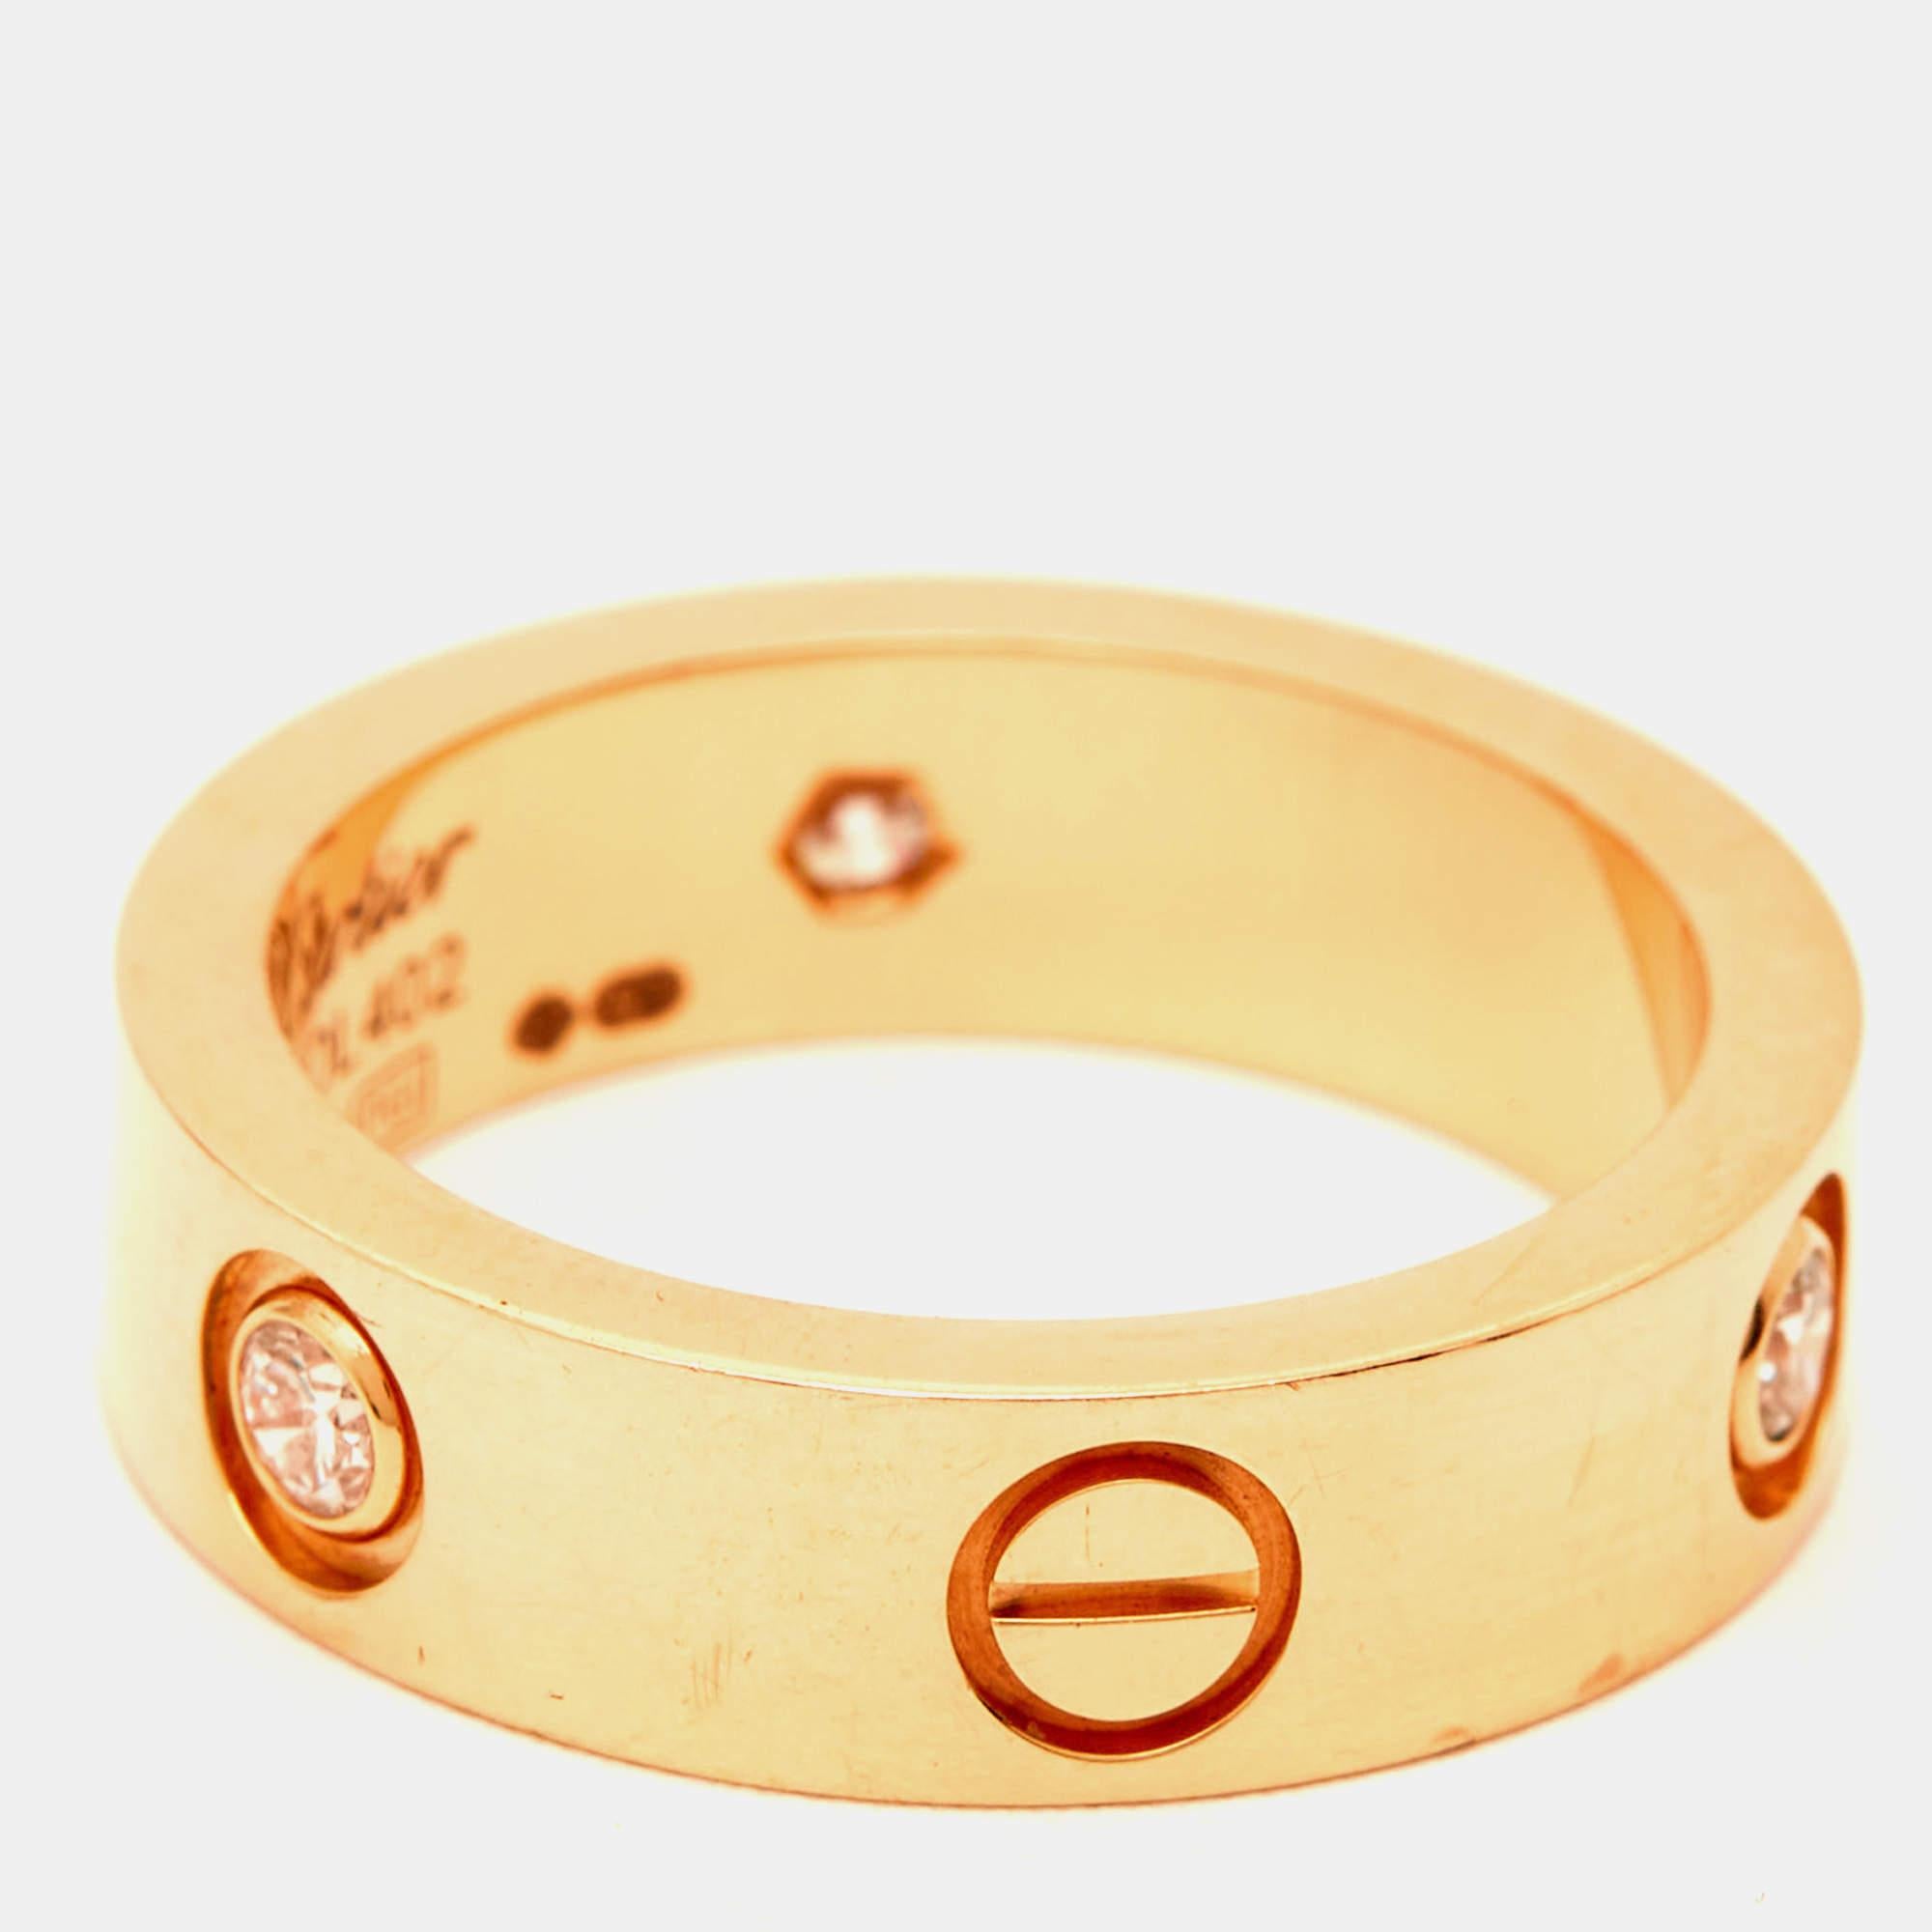 Der Cartier Love Ring ist ein Symbol für zeitlose Liebe und Engagement. Dieser kultige Ring aus luxuriösem 18-karätigem Roségold ist mit den charakteristischen Schraubenmotiven und Diamanten verziert, die für die ewige Liebe stehen. Sein schlankes